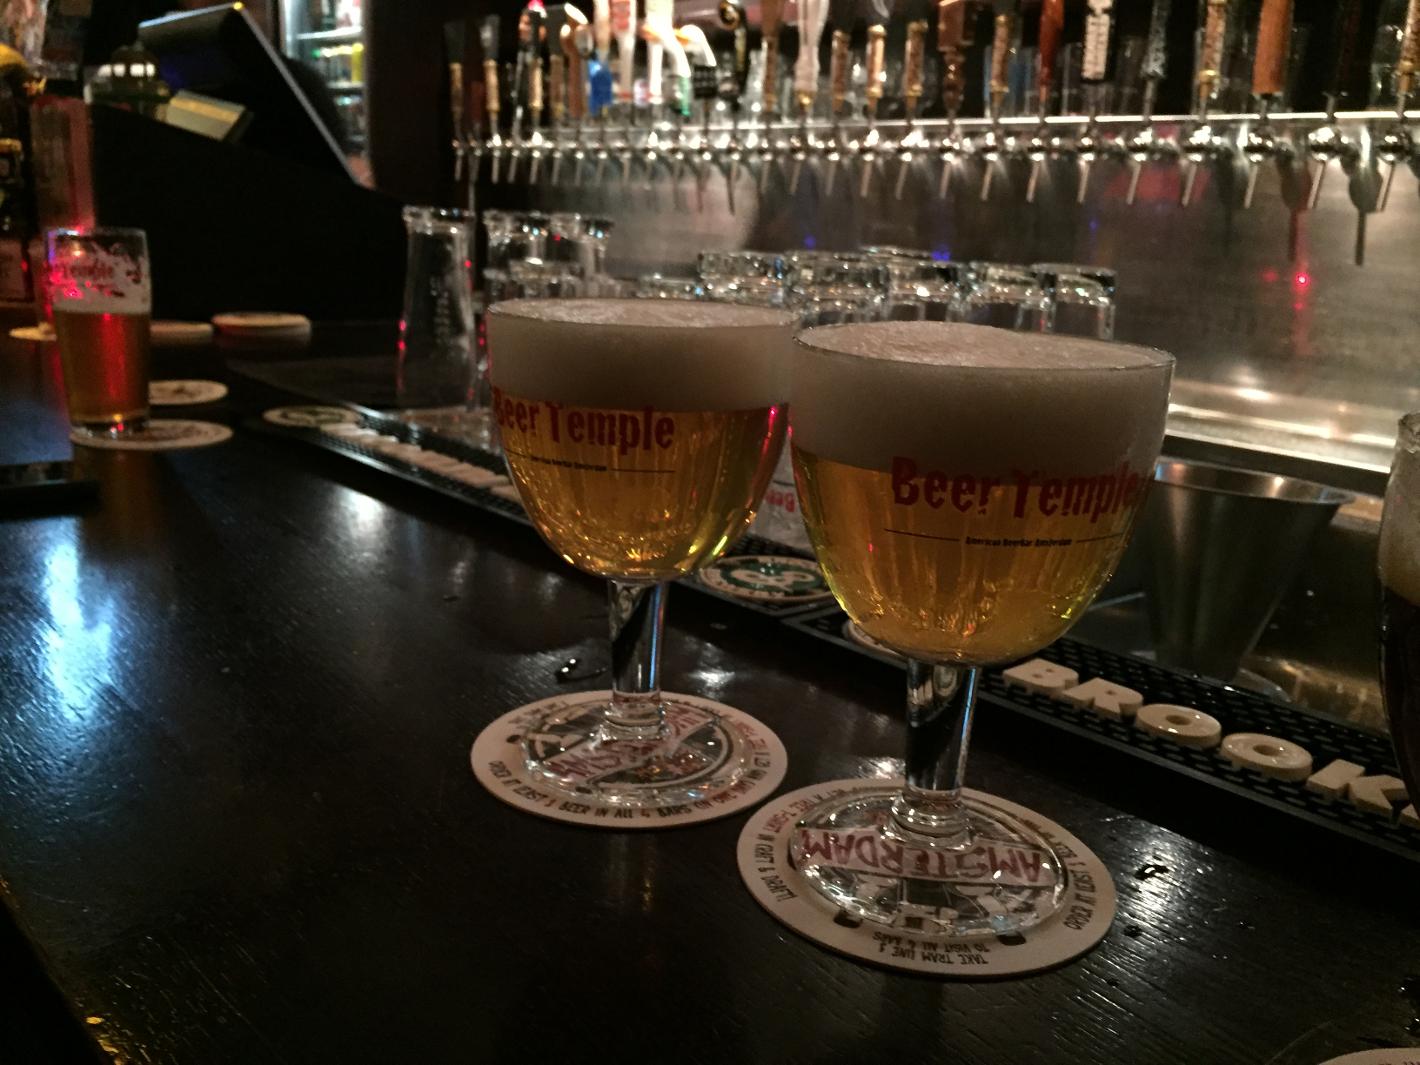 Foto BeerTemple in Amsterdam, Eten & drinken, Gezellig borrelen - #3